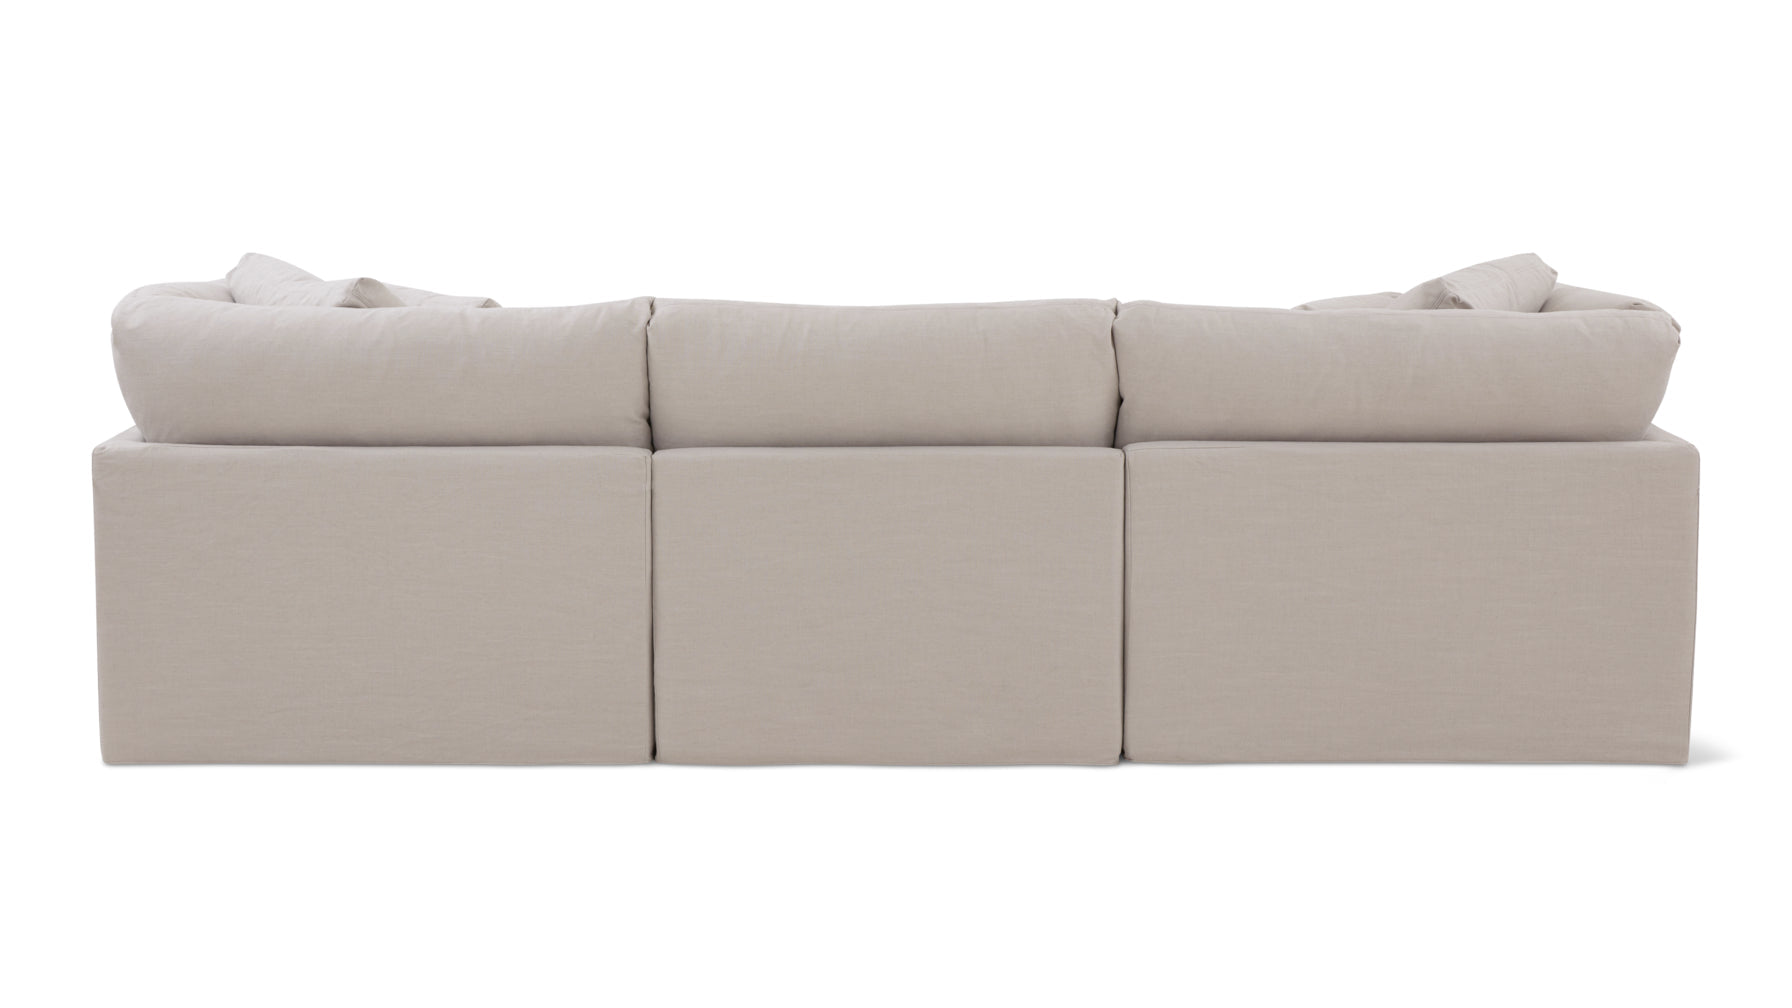 Get Together™ 3-Piece Modular Sofa, Large, Clay - Image 7